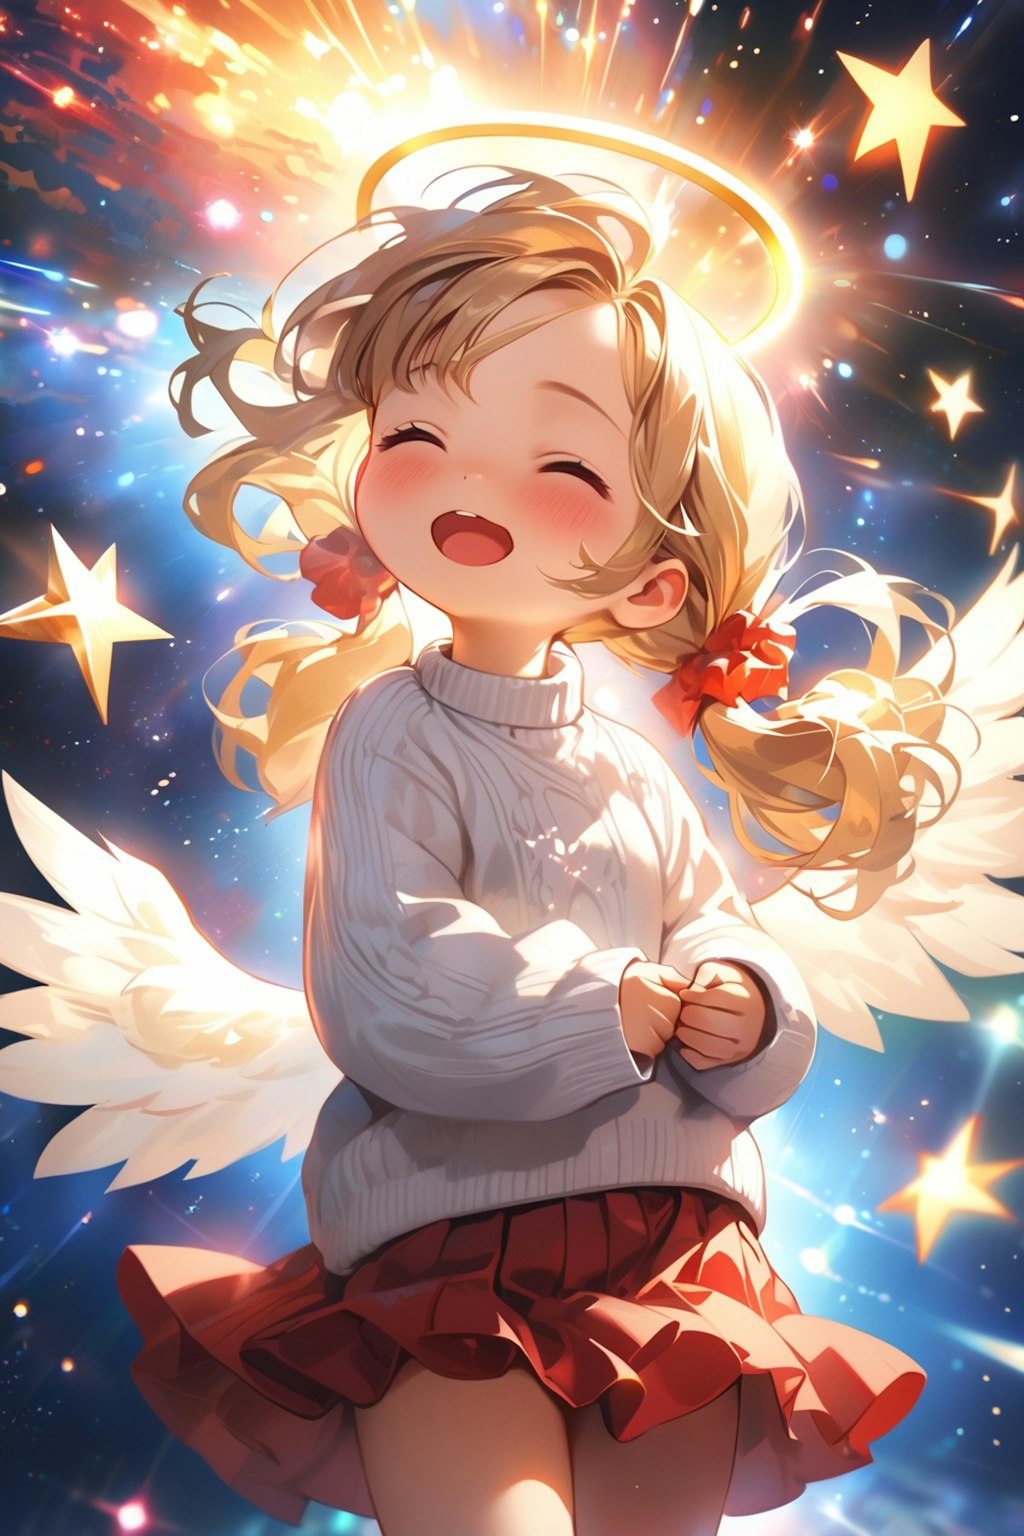 大天使茉莉花ちゃん宇宙 - sora - へ